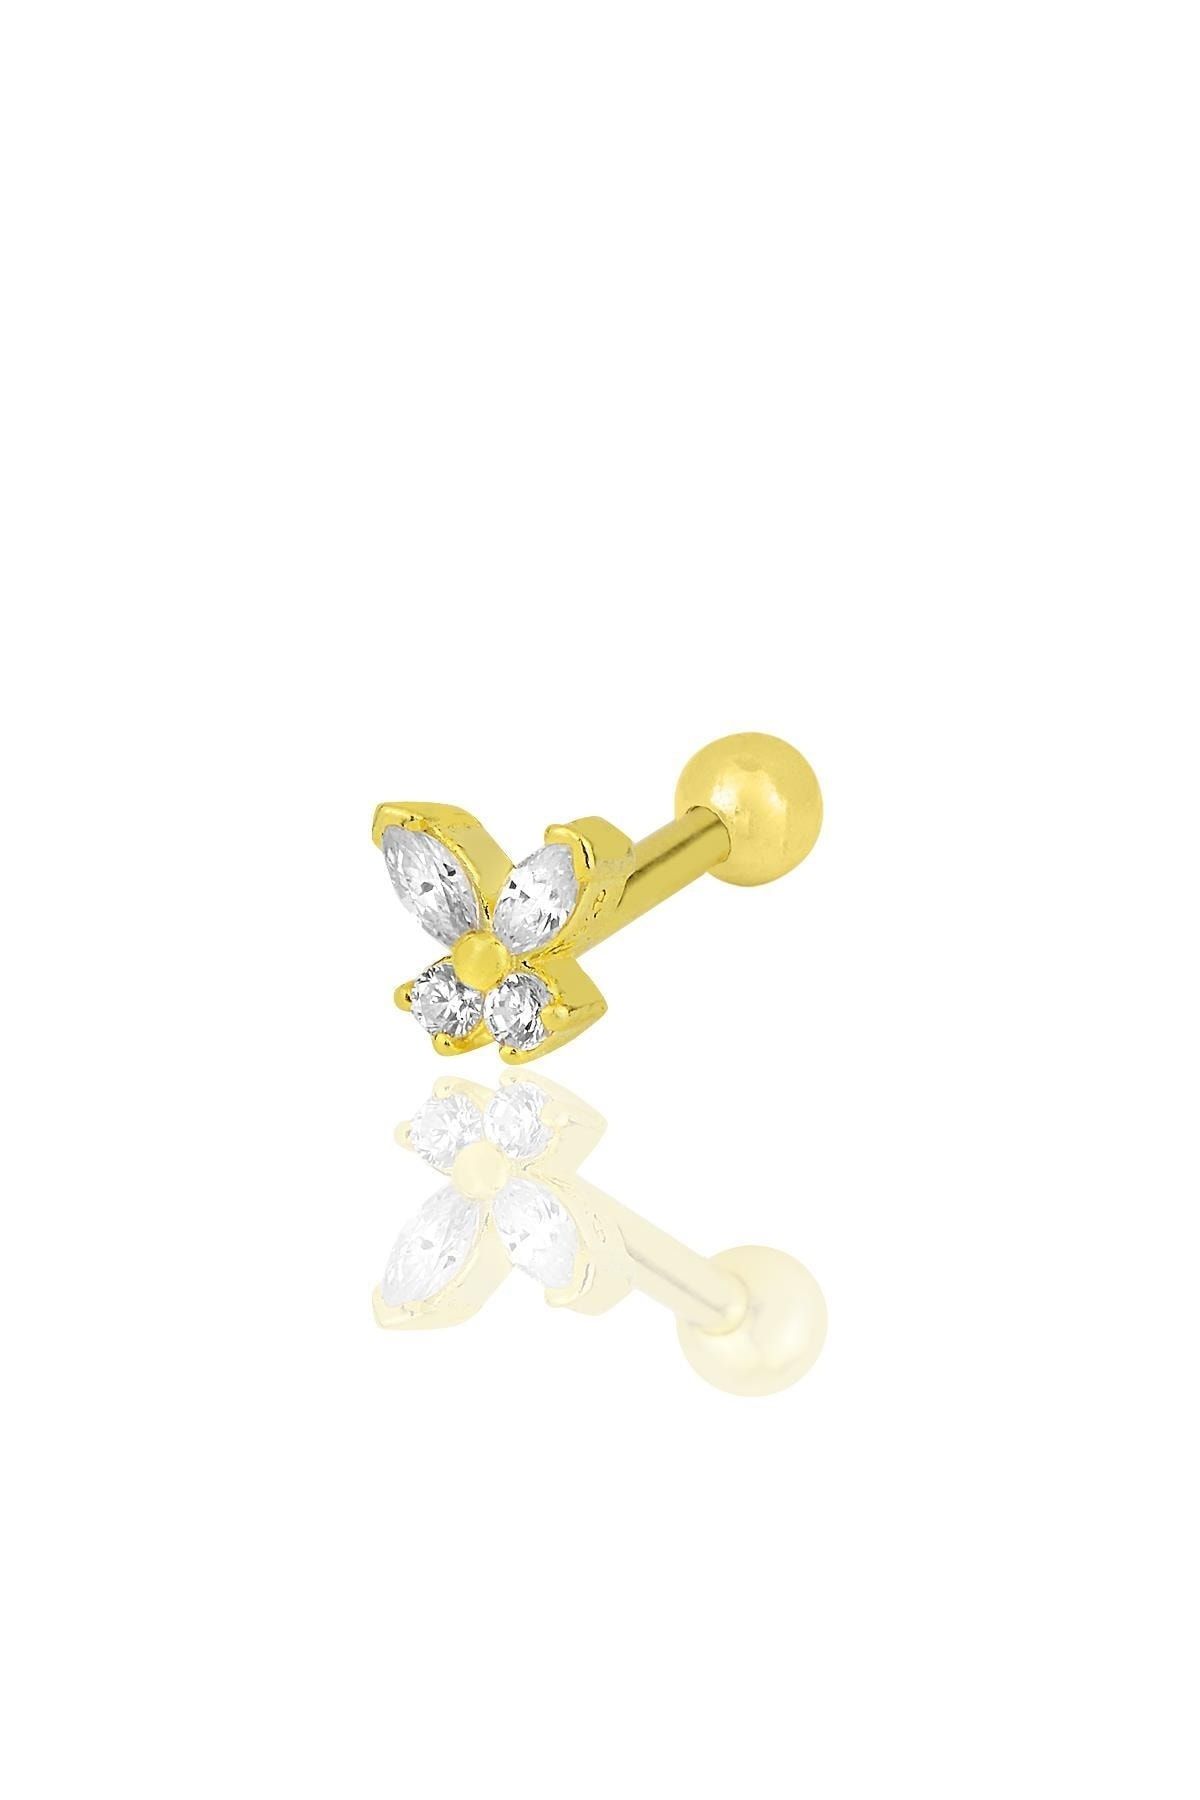 Söğütlü Silver Gümüş Altın Yaldızlı Baget Taşlı Kelebek Modeli Tragus Helix Piercing Küpe